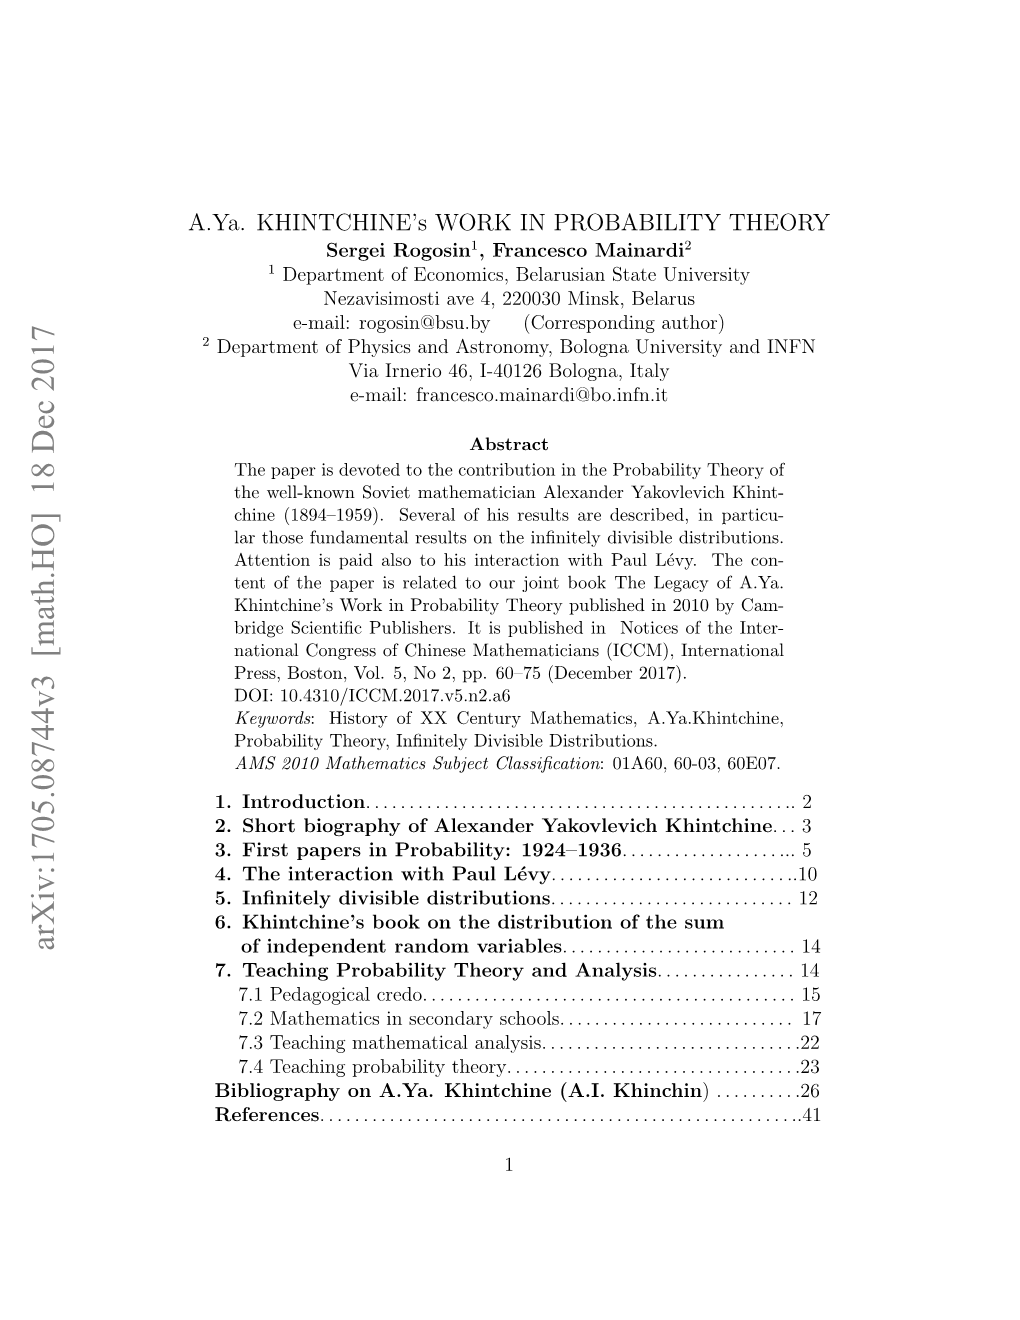 A. Ya. Khintchine's Work in Probability Theory